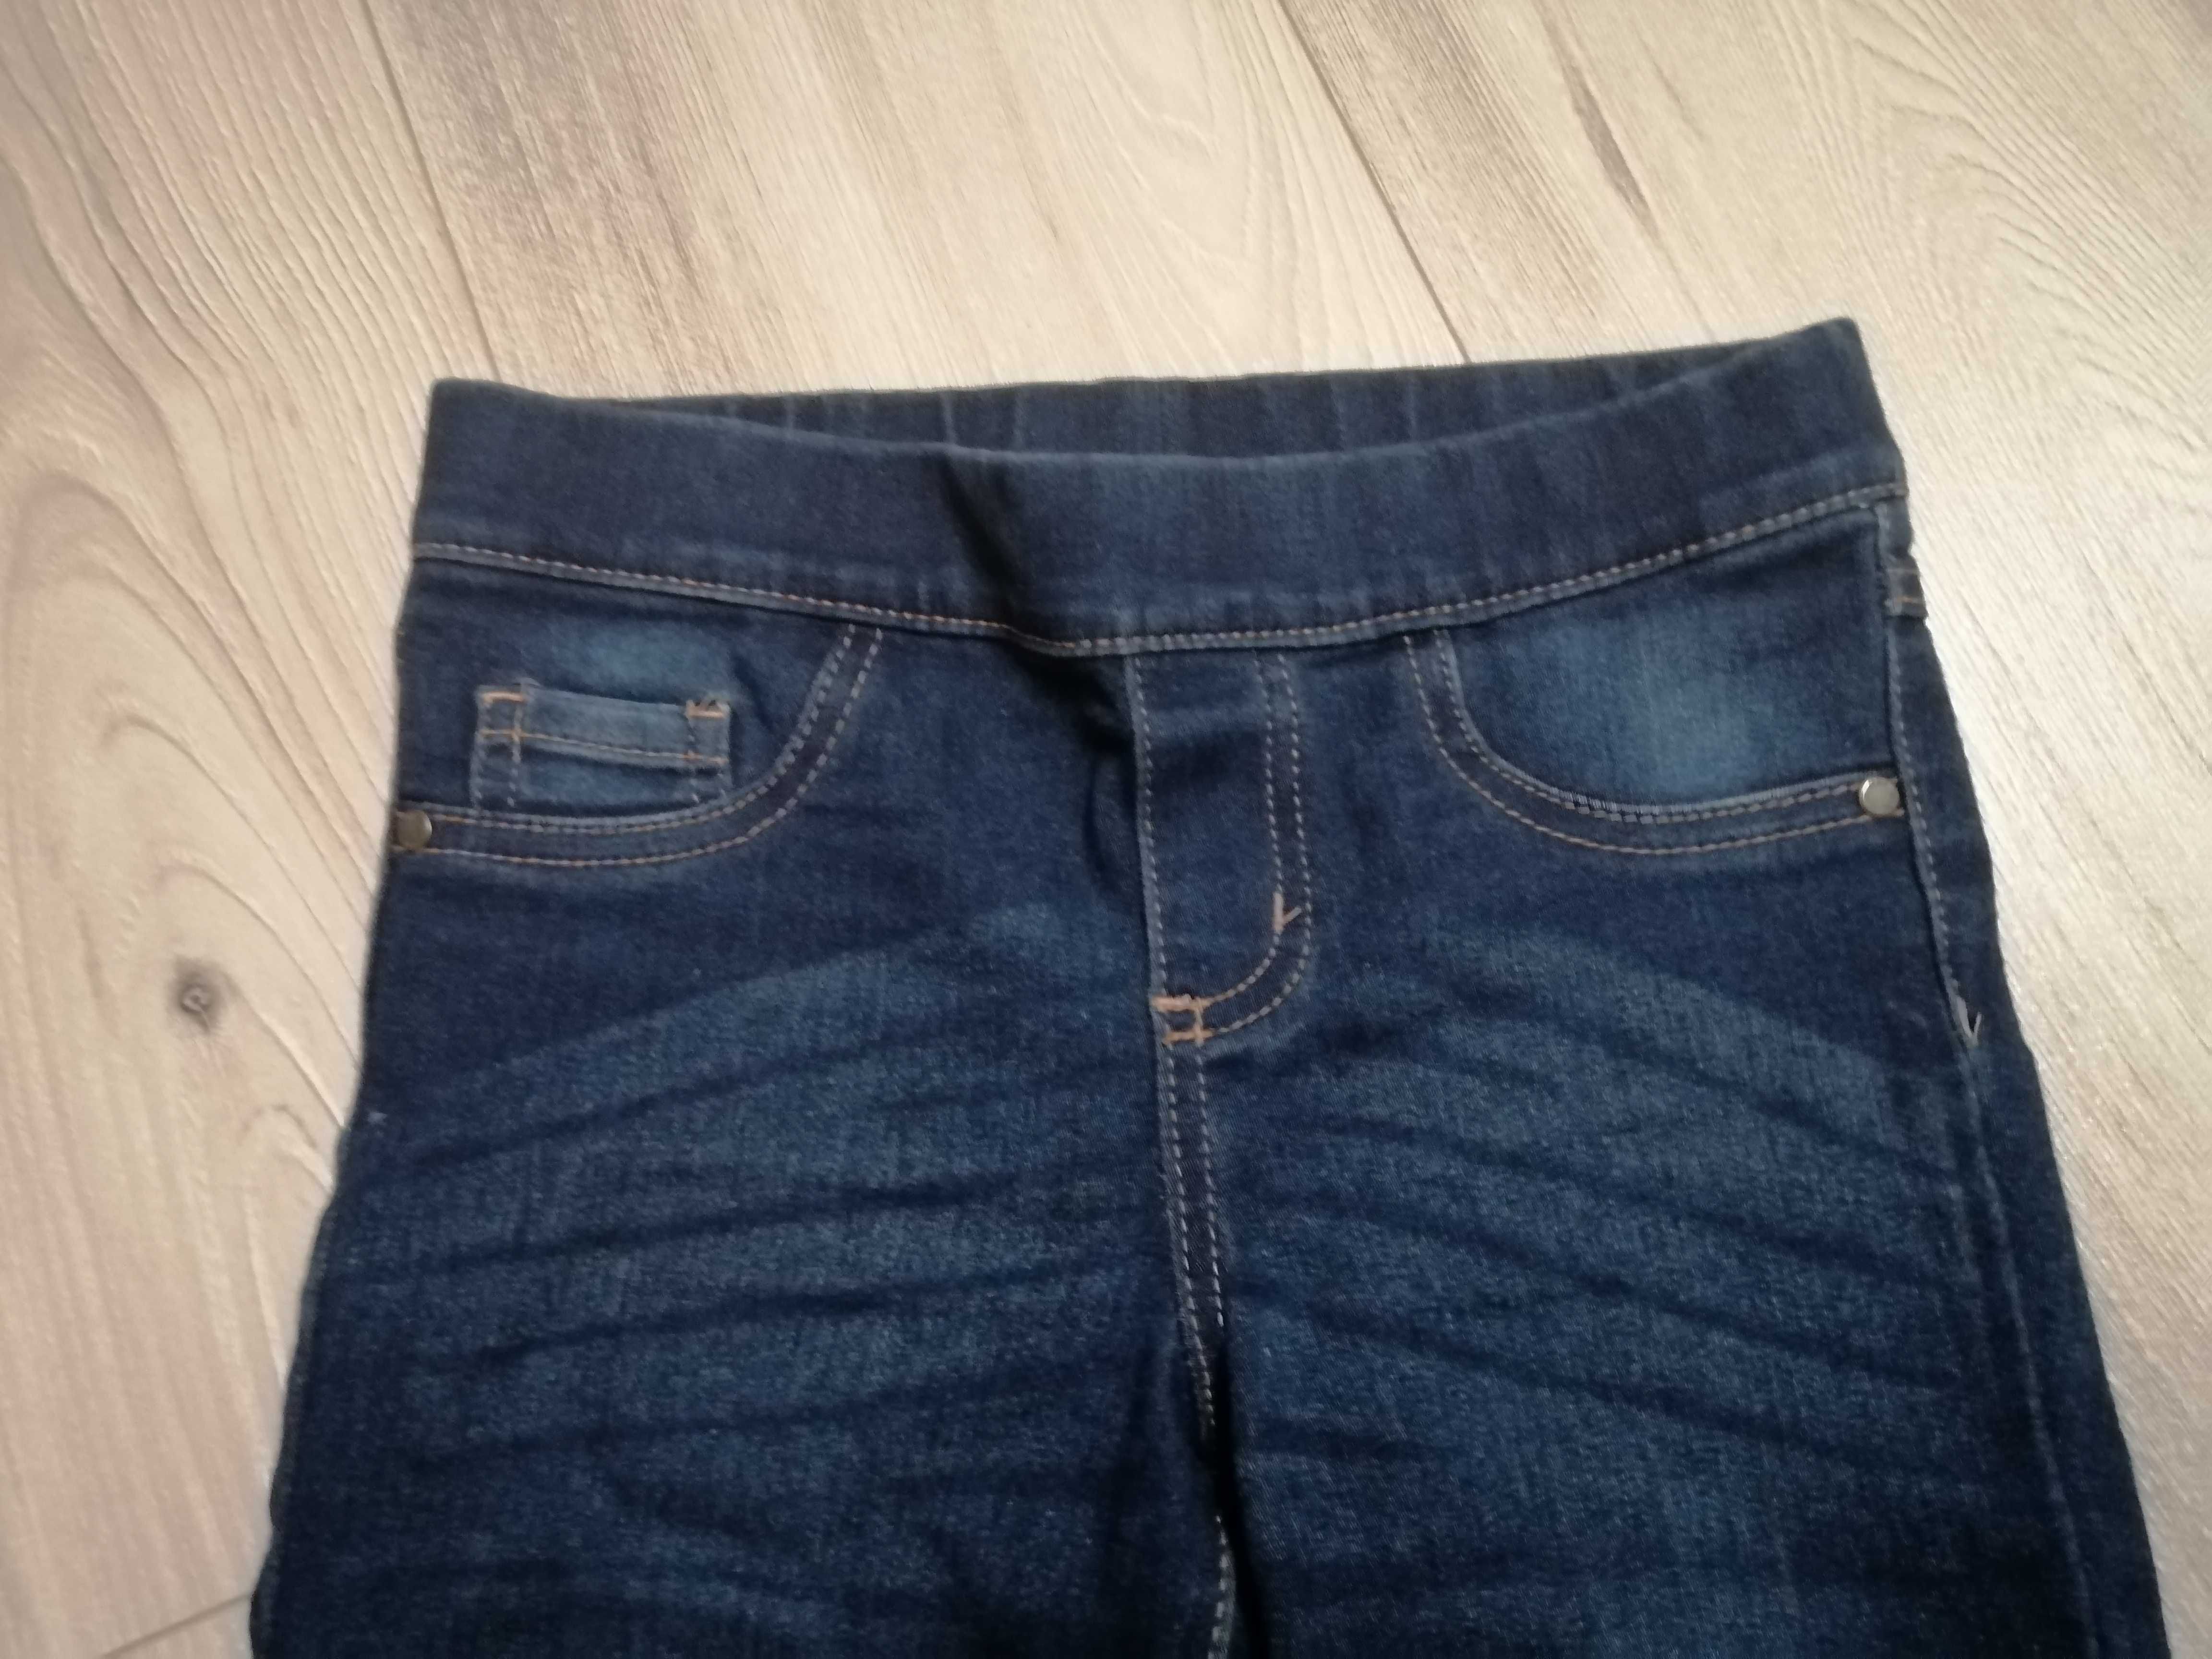 spodnie/legginsy jeansowe firmy Destination, dziewczynka, r. 128/134